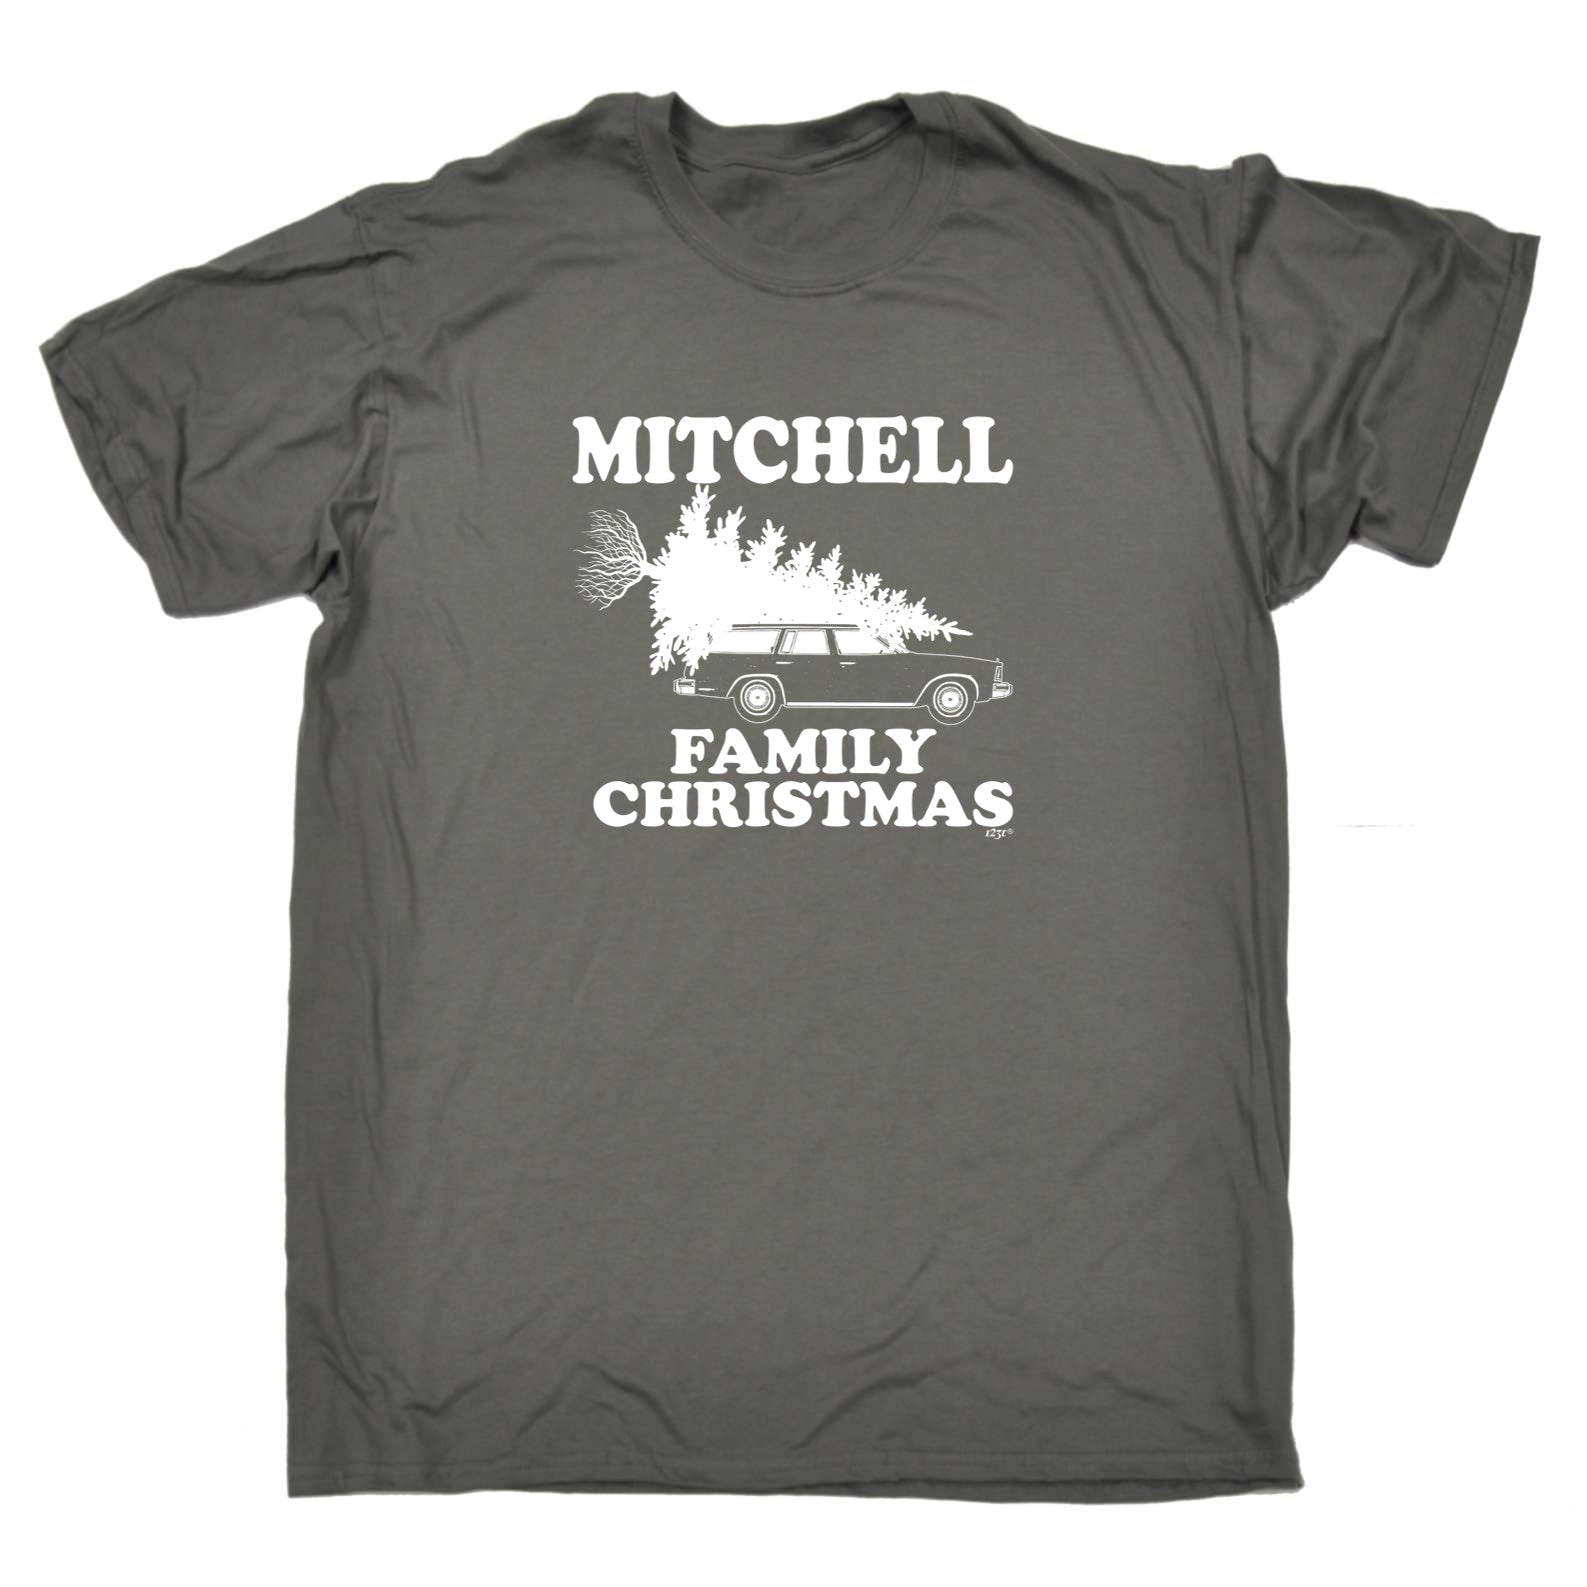 Family Christmas Mitchell - Mens Funny T-Shirt Tshirts